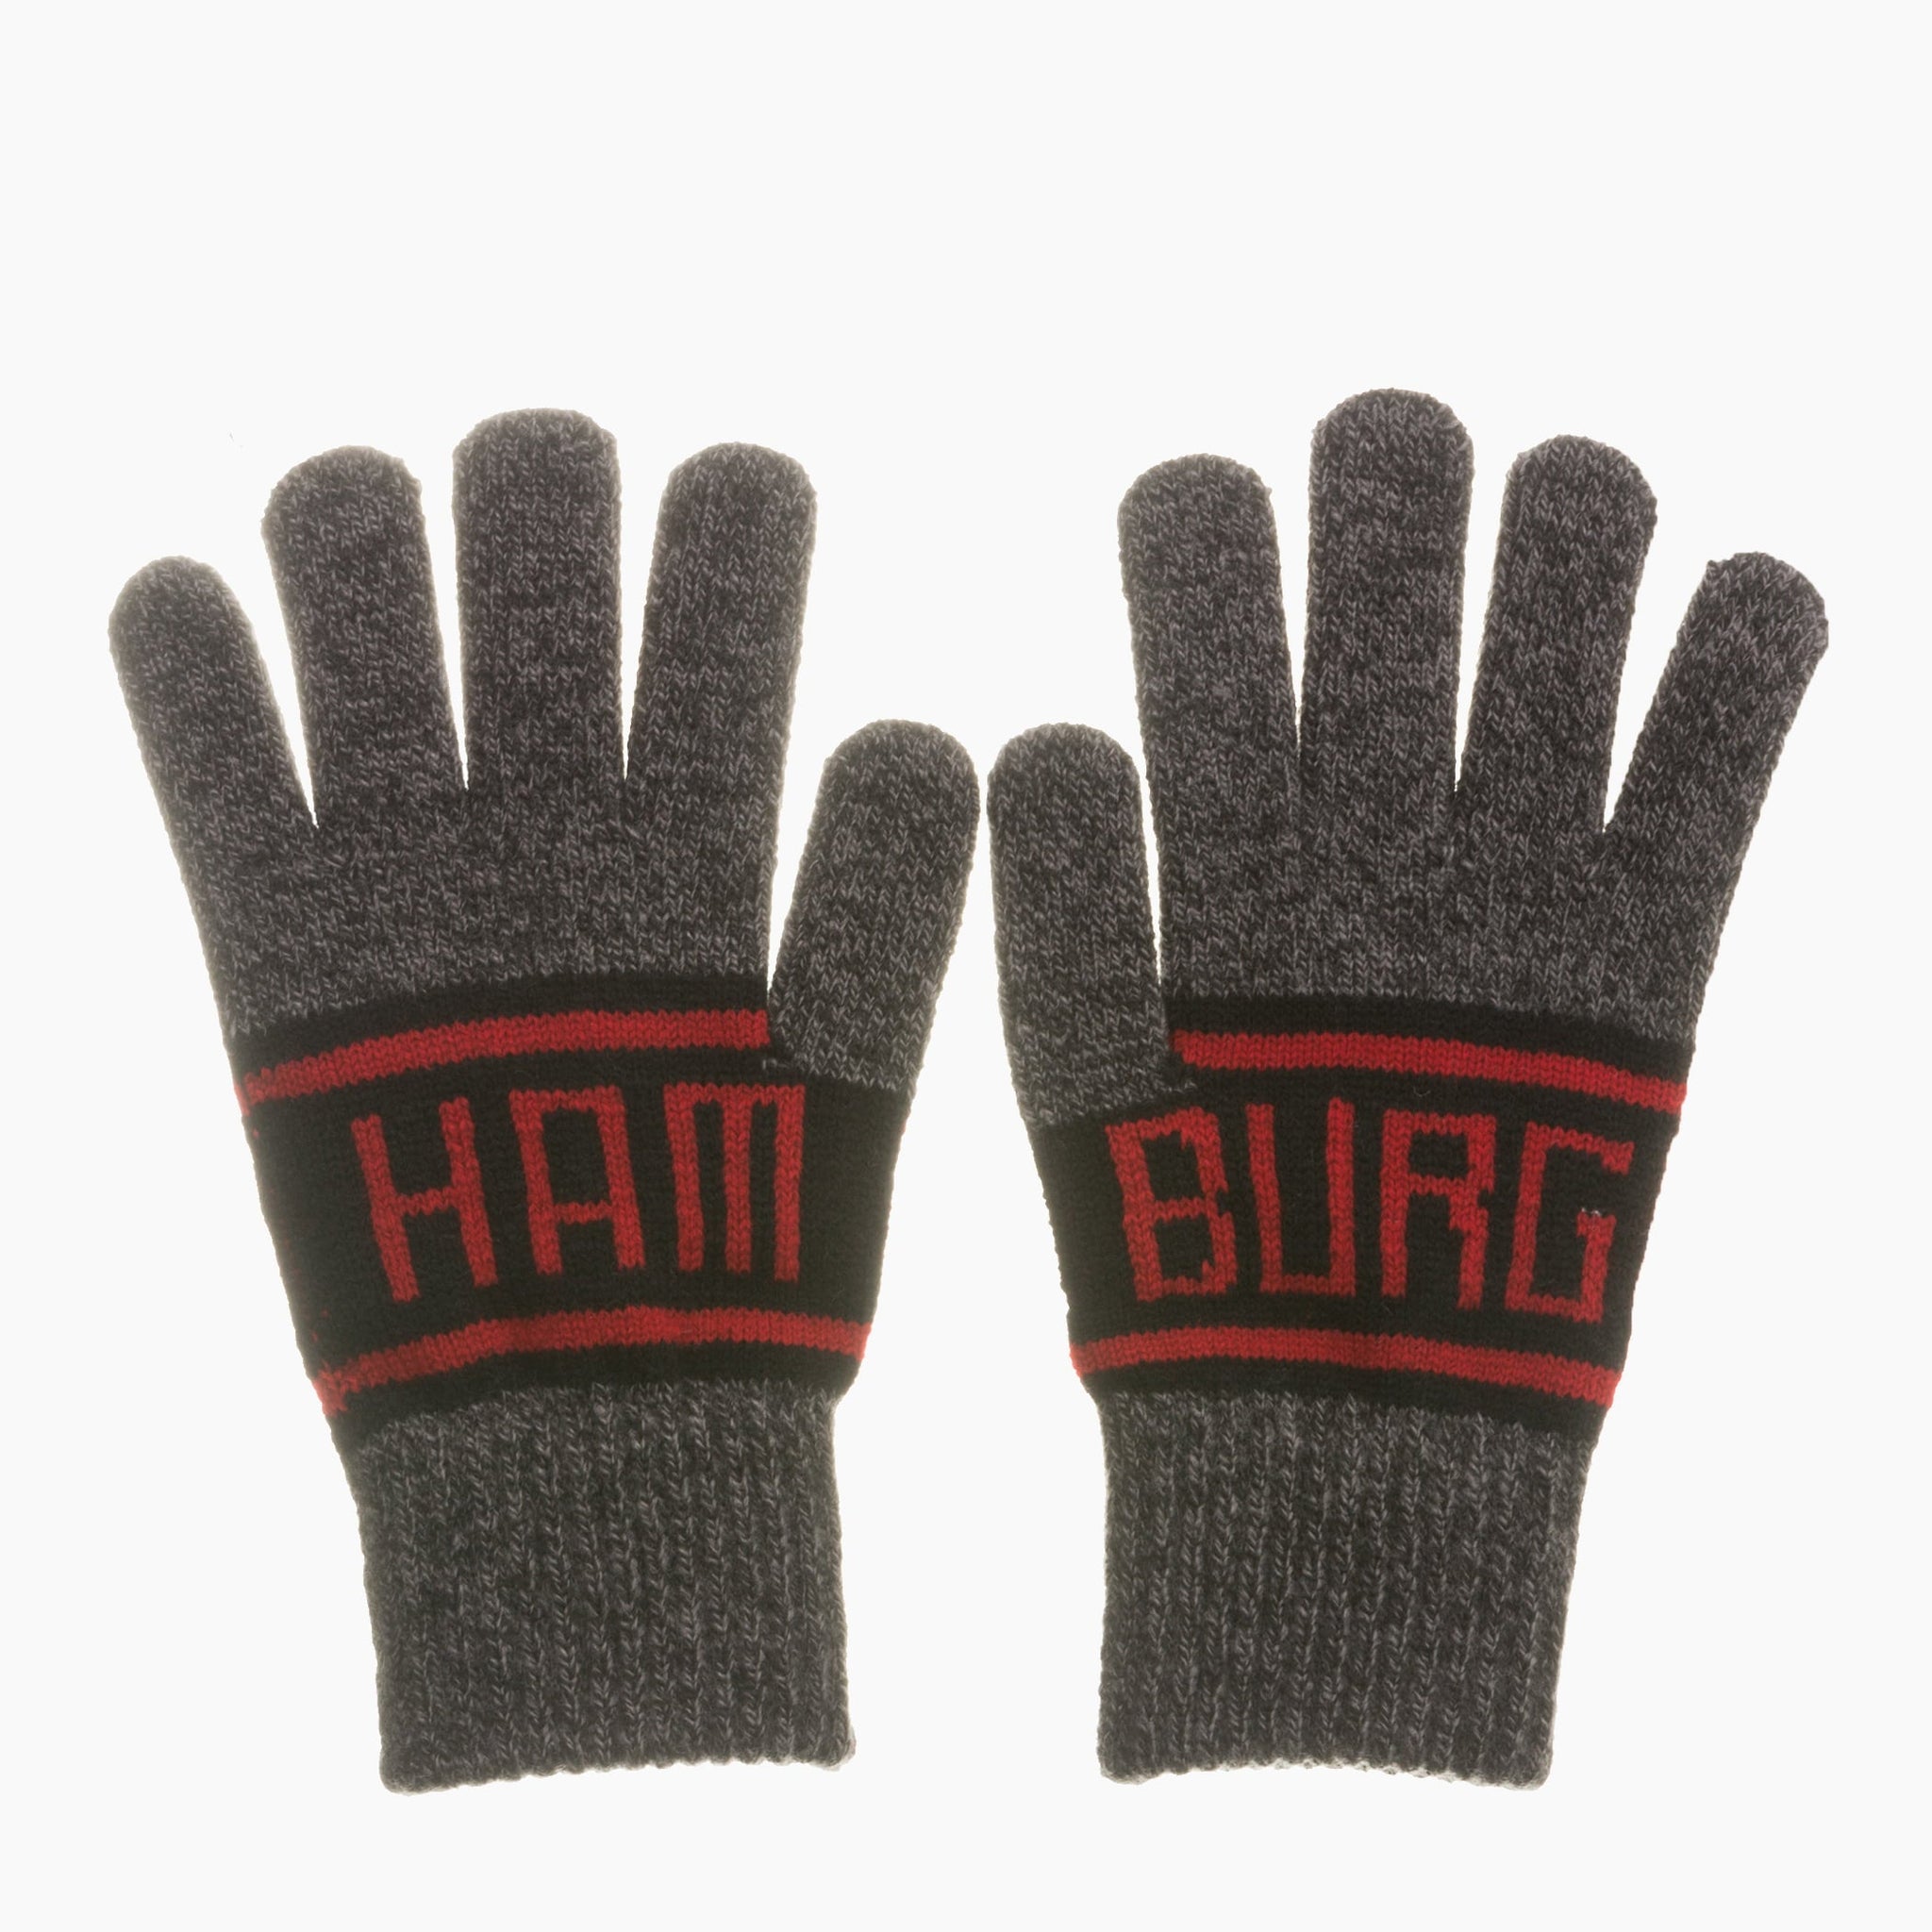 Hamburg Gloves - Robin Ruth